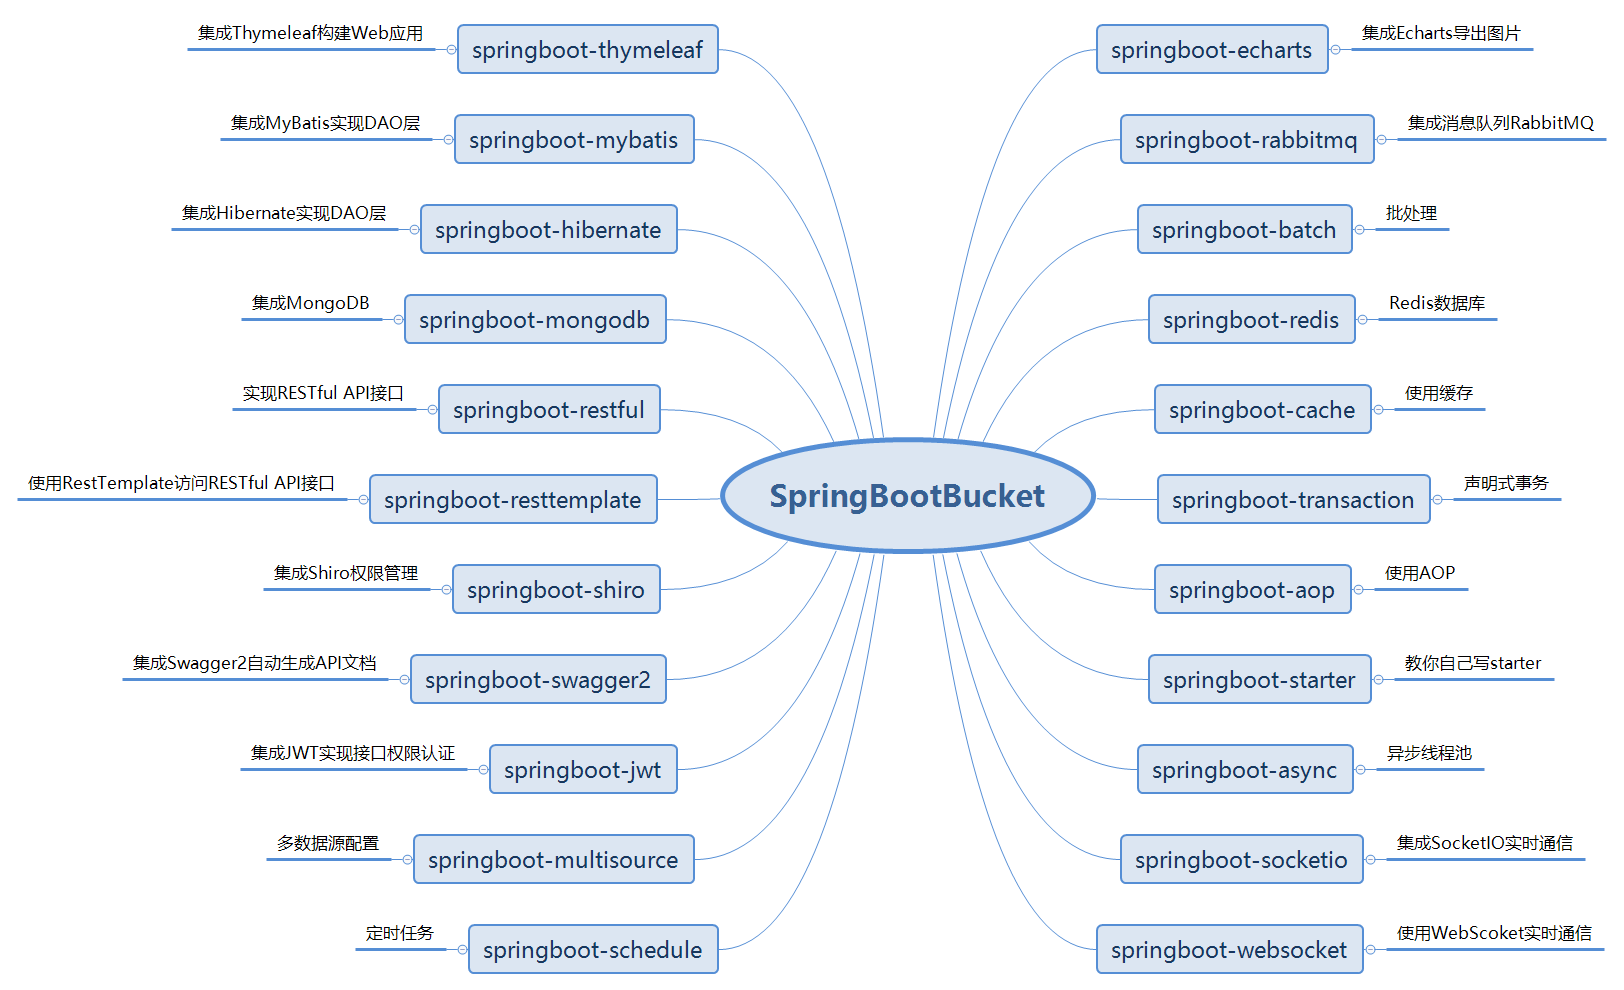 ../_images/JavaEE.springboot-bucket.png